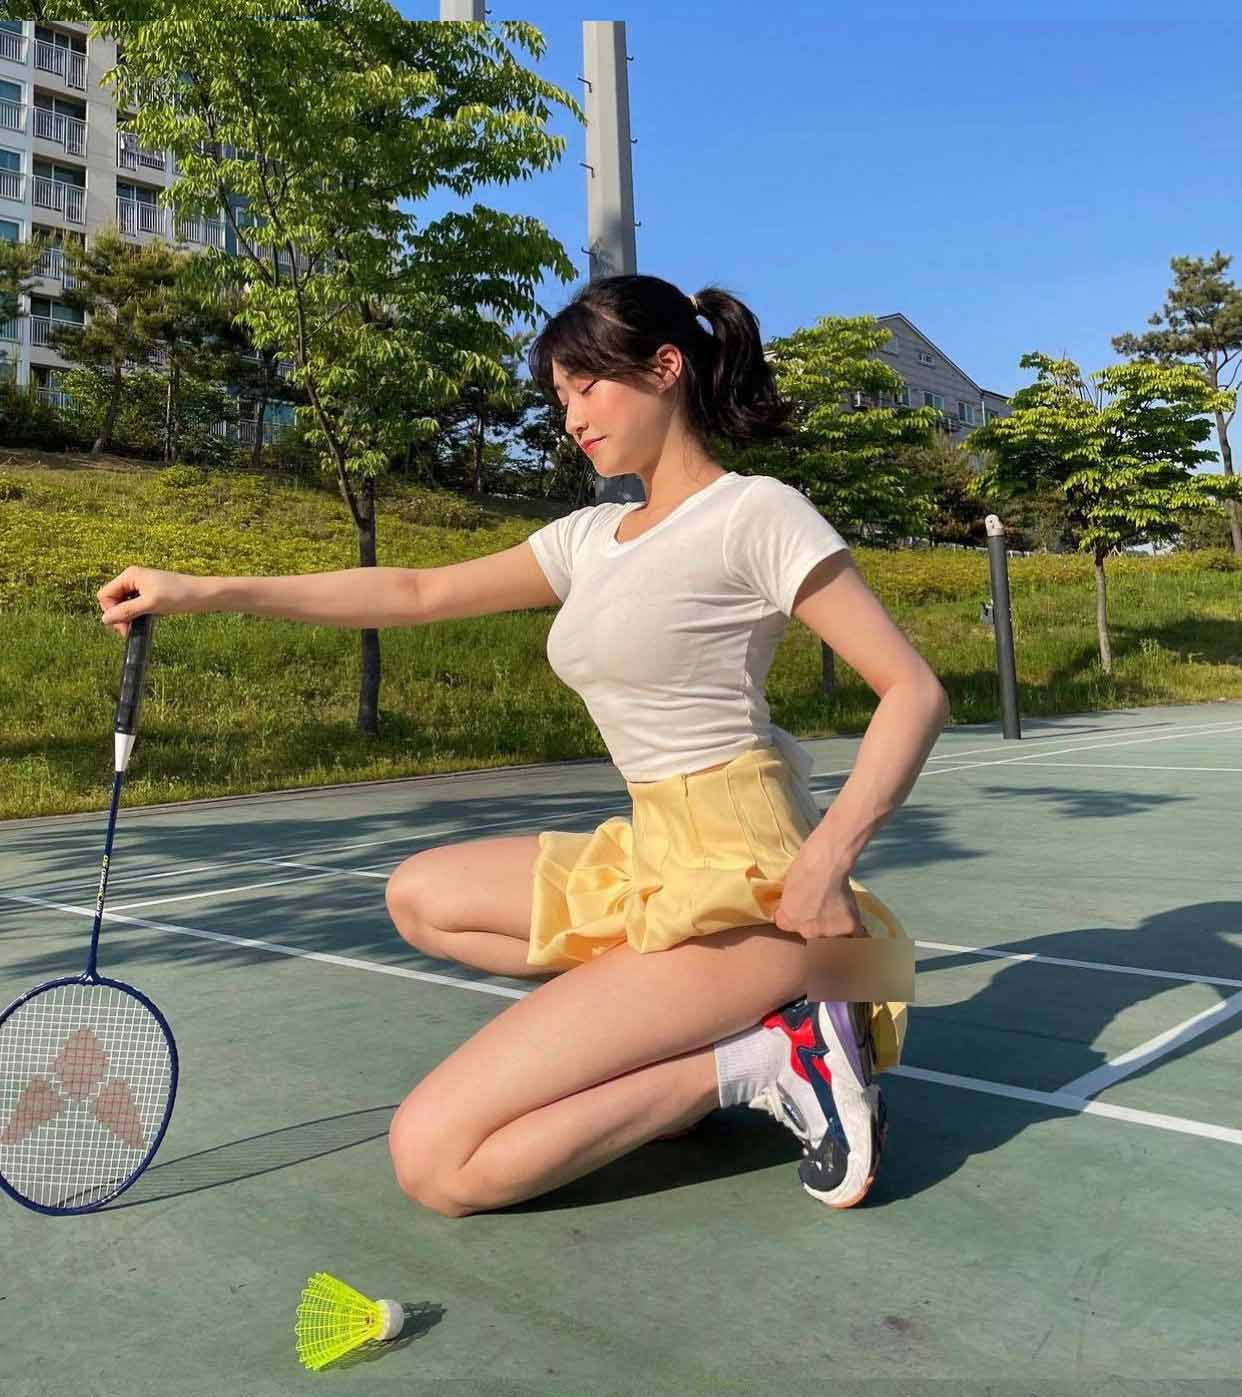 Người đẹp sân tennis lại có trào lưu mới với váy ngắn